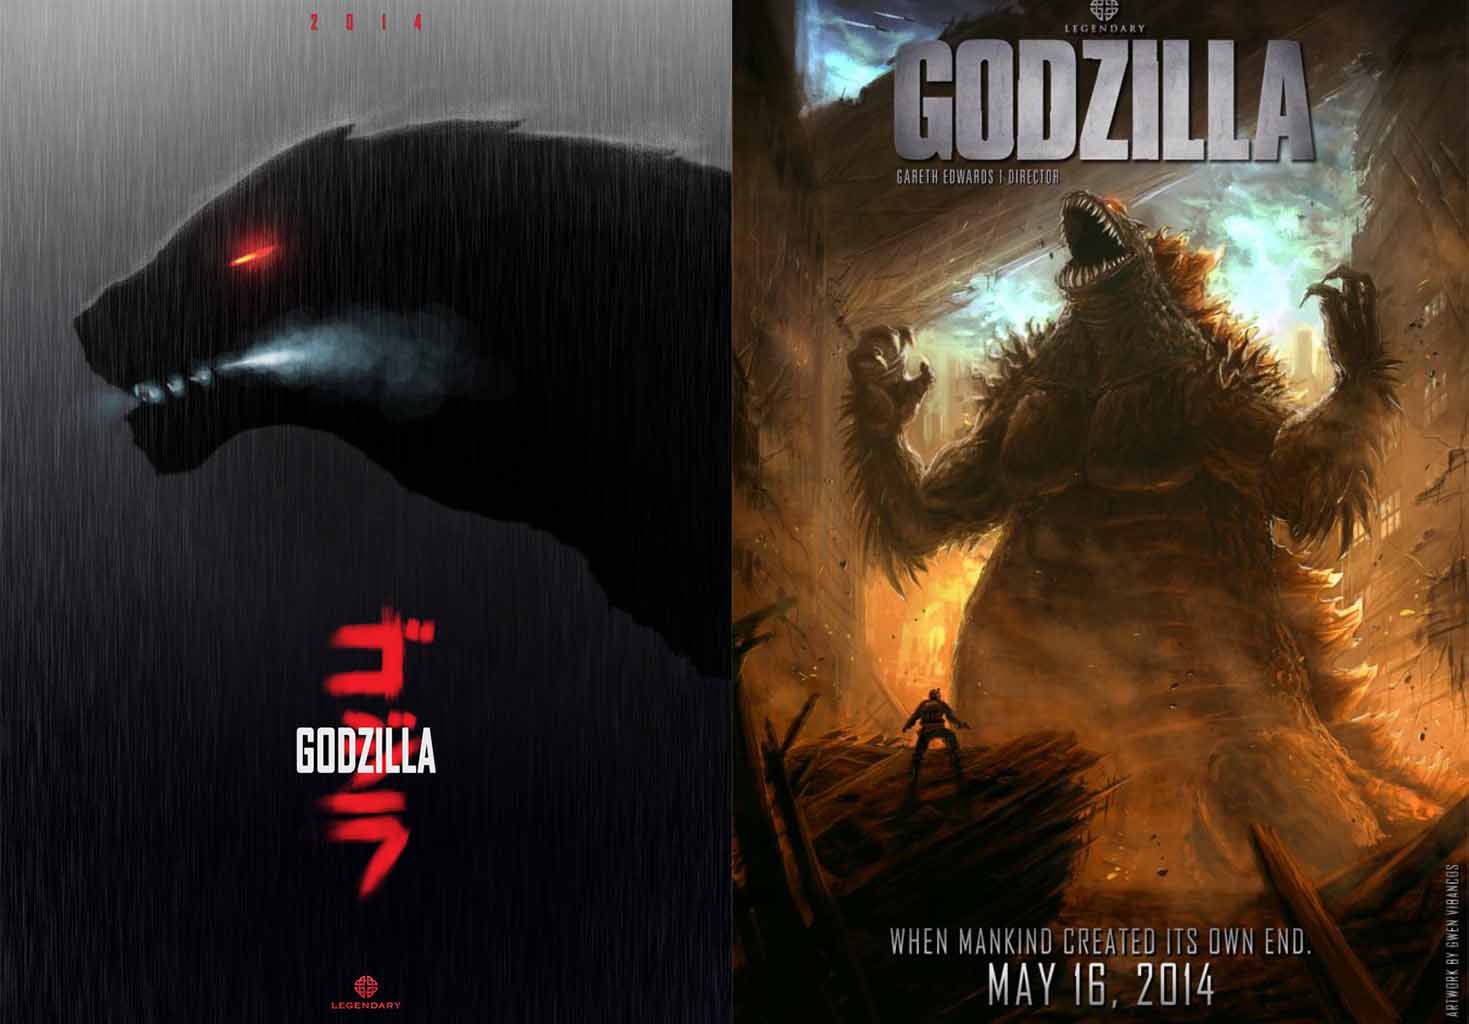 Godzilla 2014 Movie Quotes. QuotesGram